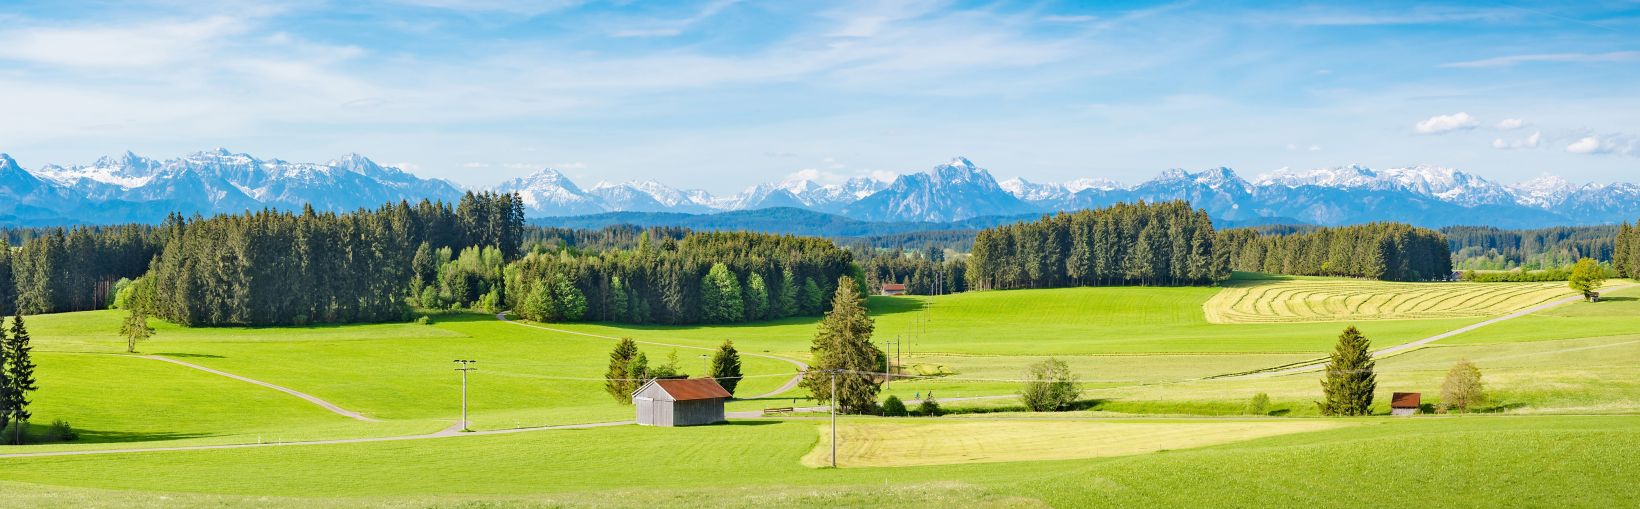 Allgäu, raudoni stogu dengti ūkiniai pastatai didžiuliame žaliame laukų ir miško kraštovaizdyje su dramatišku sniego fone apribojo kalnus horizonte